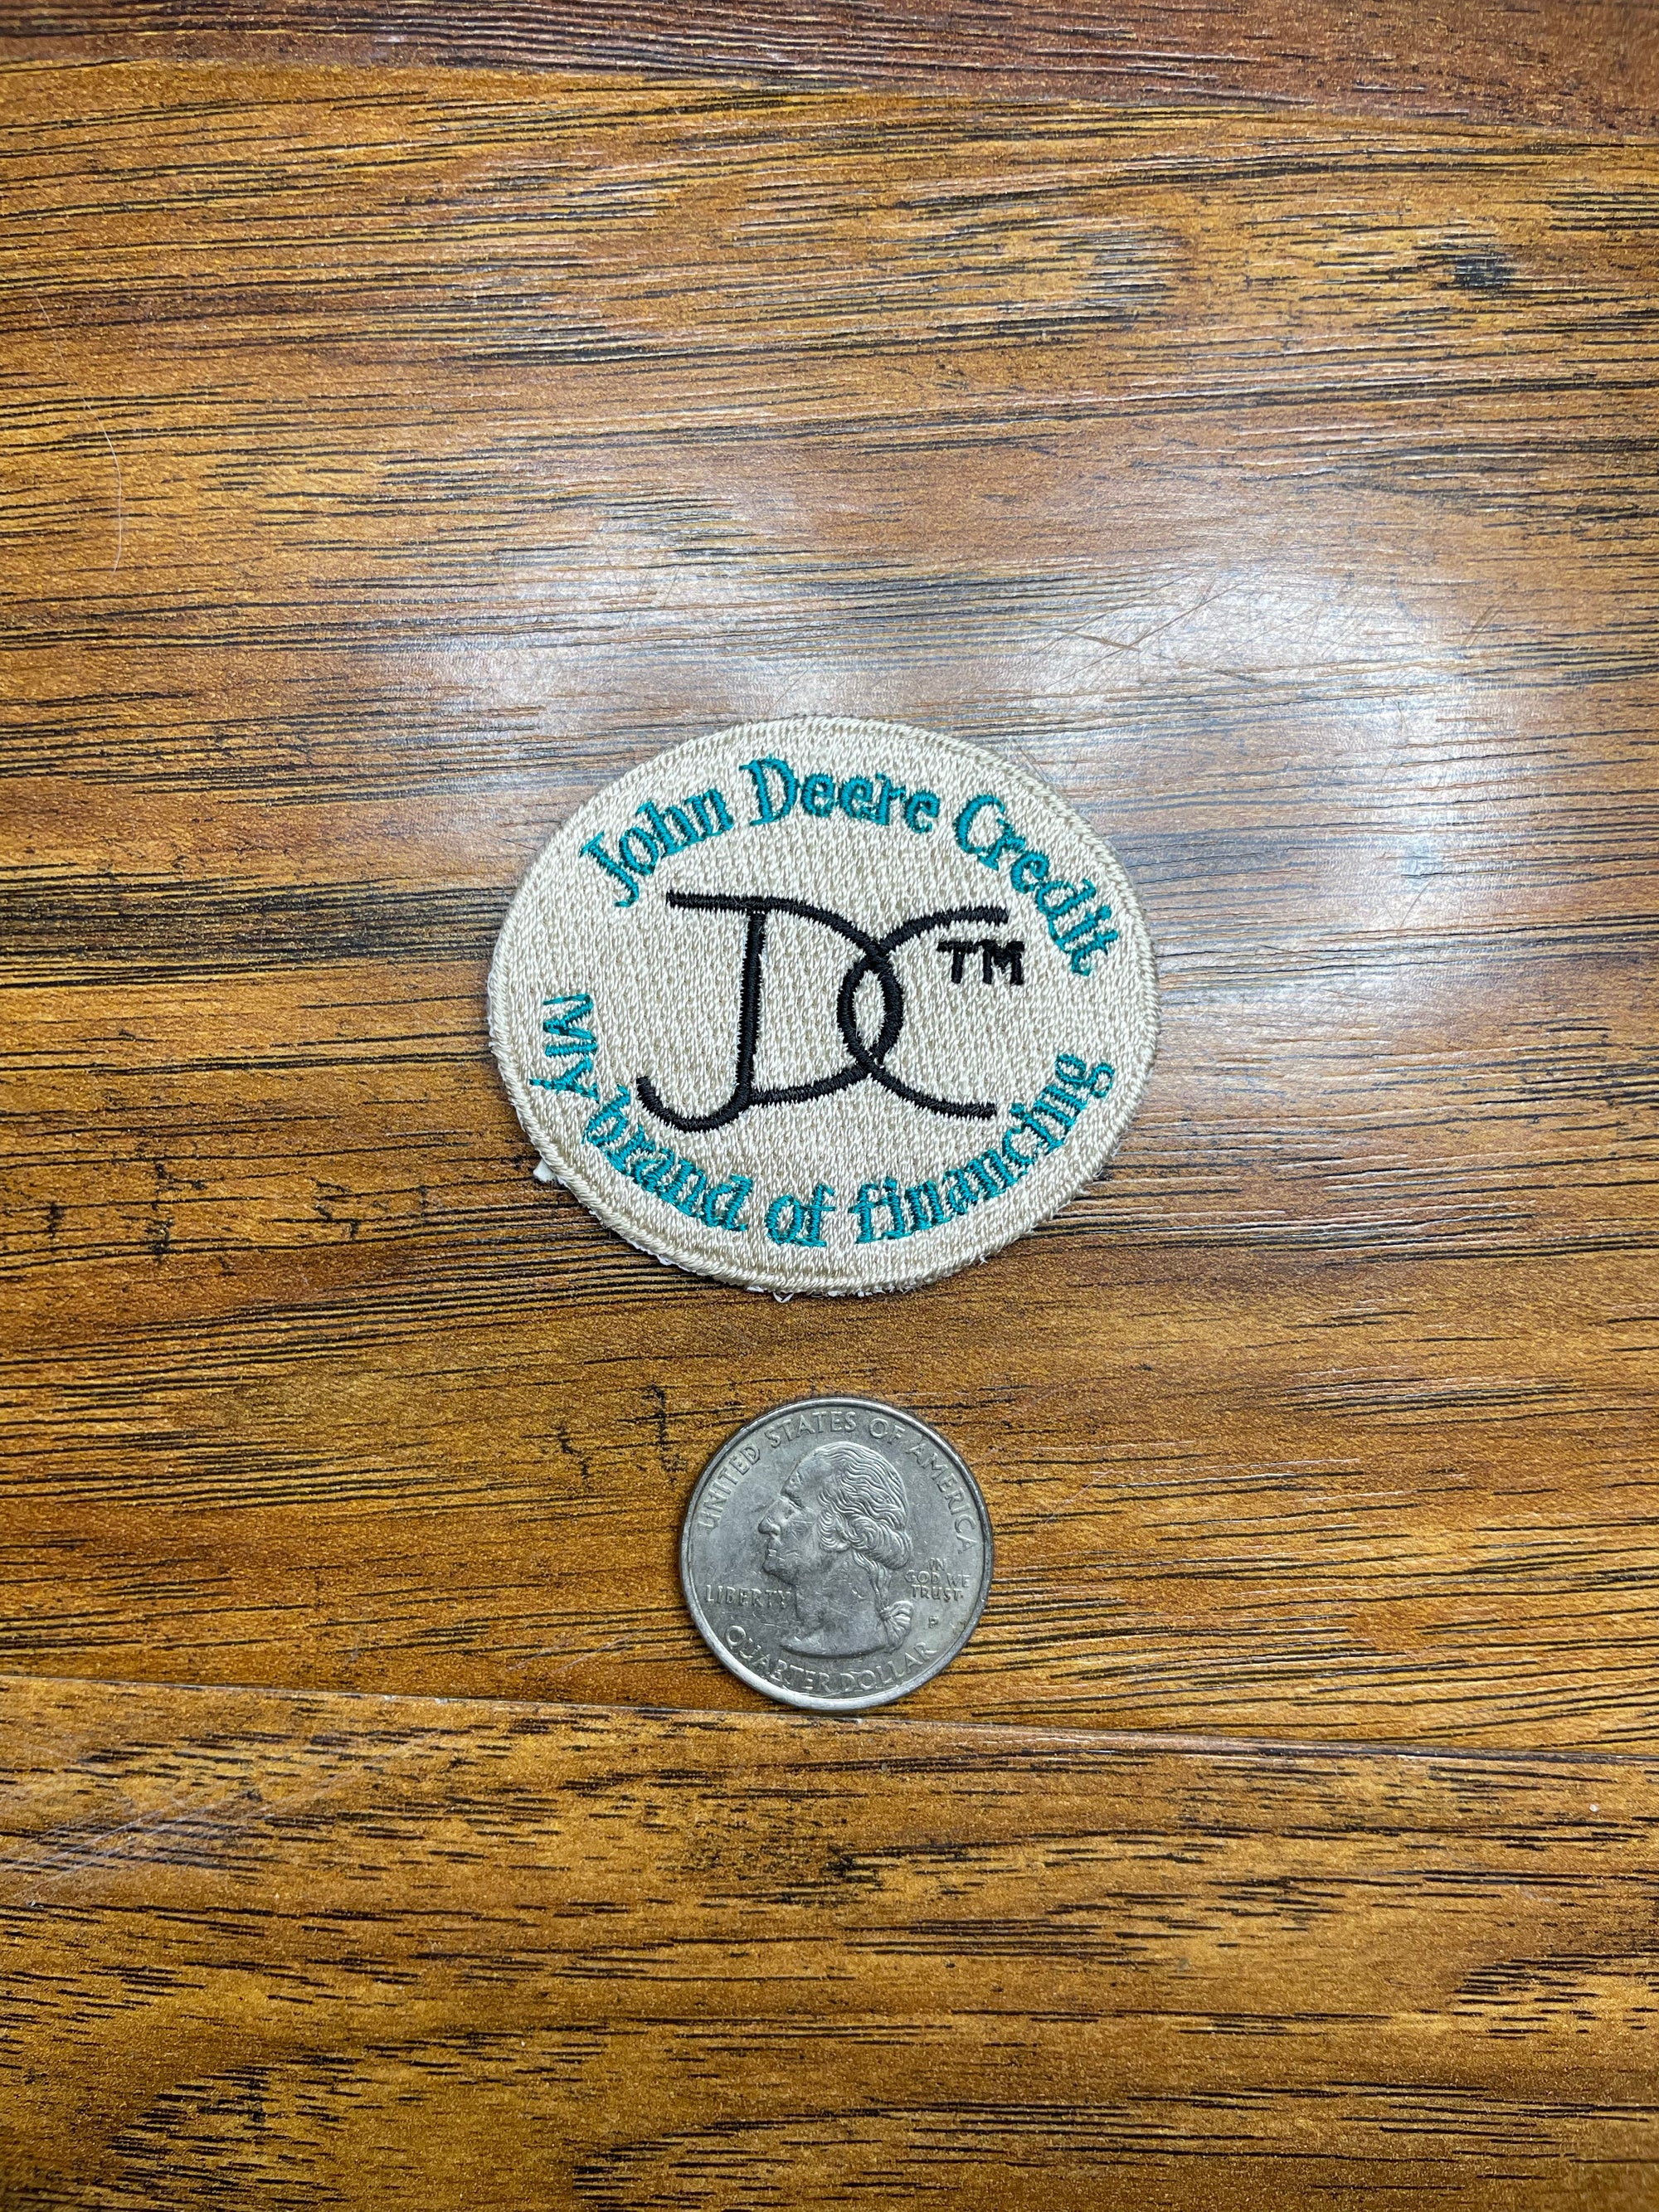 Vintage John Deere Credit- My Brand Of Financing